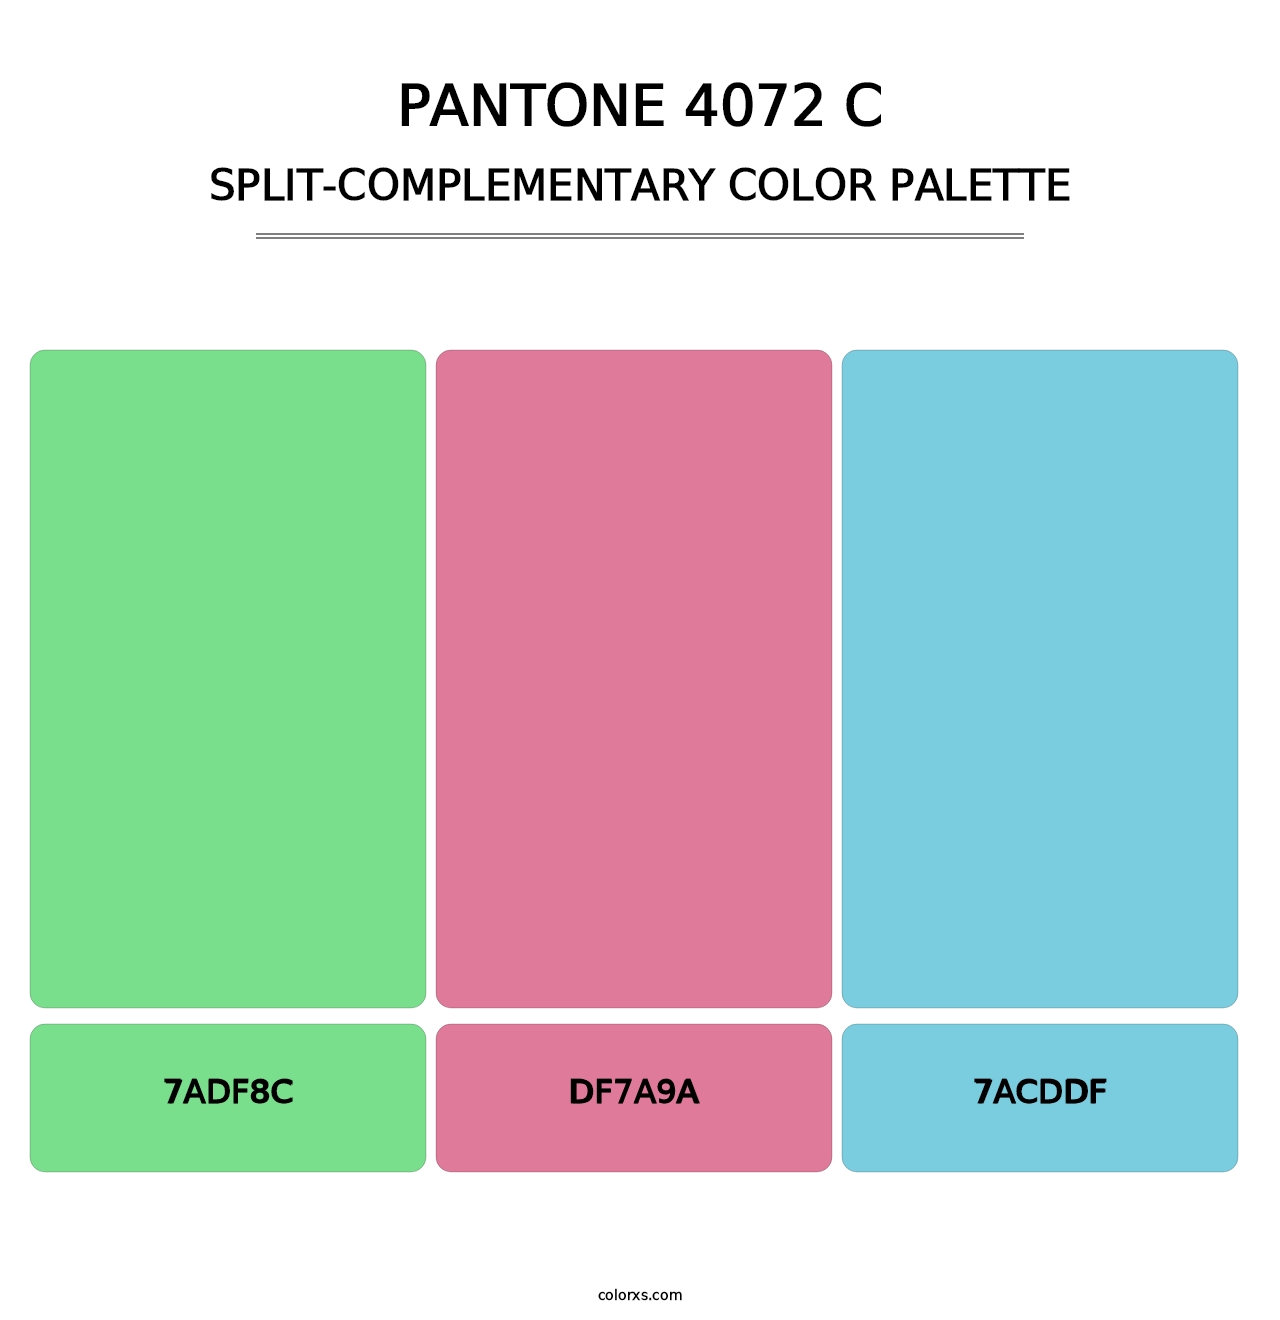 PANTONE 4072 C - Split-Complementary Color Palette